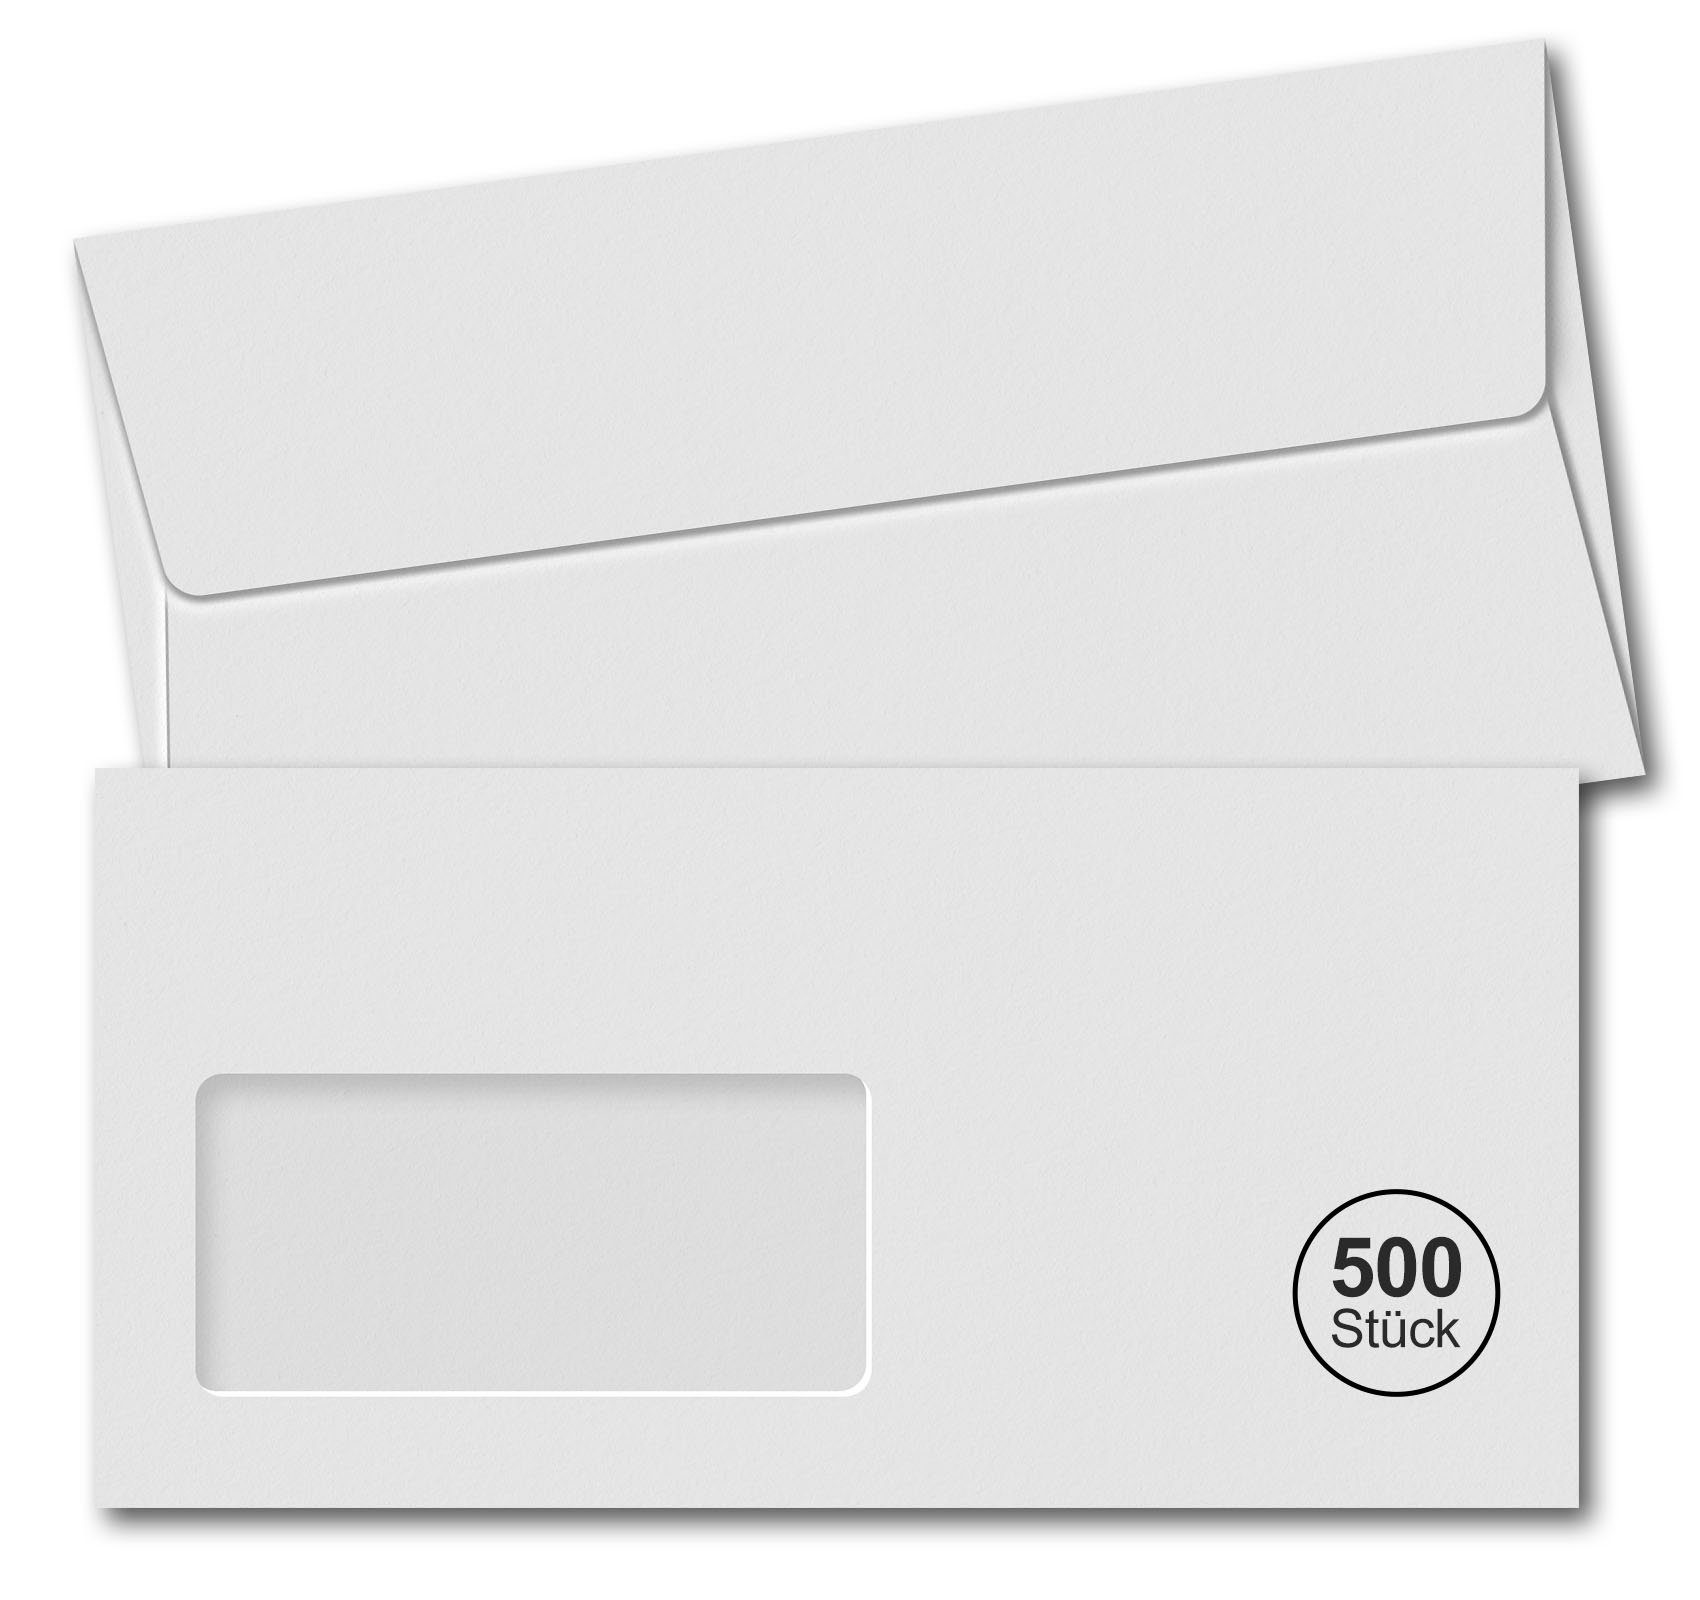 Homewit Briefumschlag 500 Stück DIN Lang Selbstklebende Weiße Briefumschläge 220 x 110 mm, Mit 100 x 48 mm Fenster